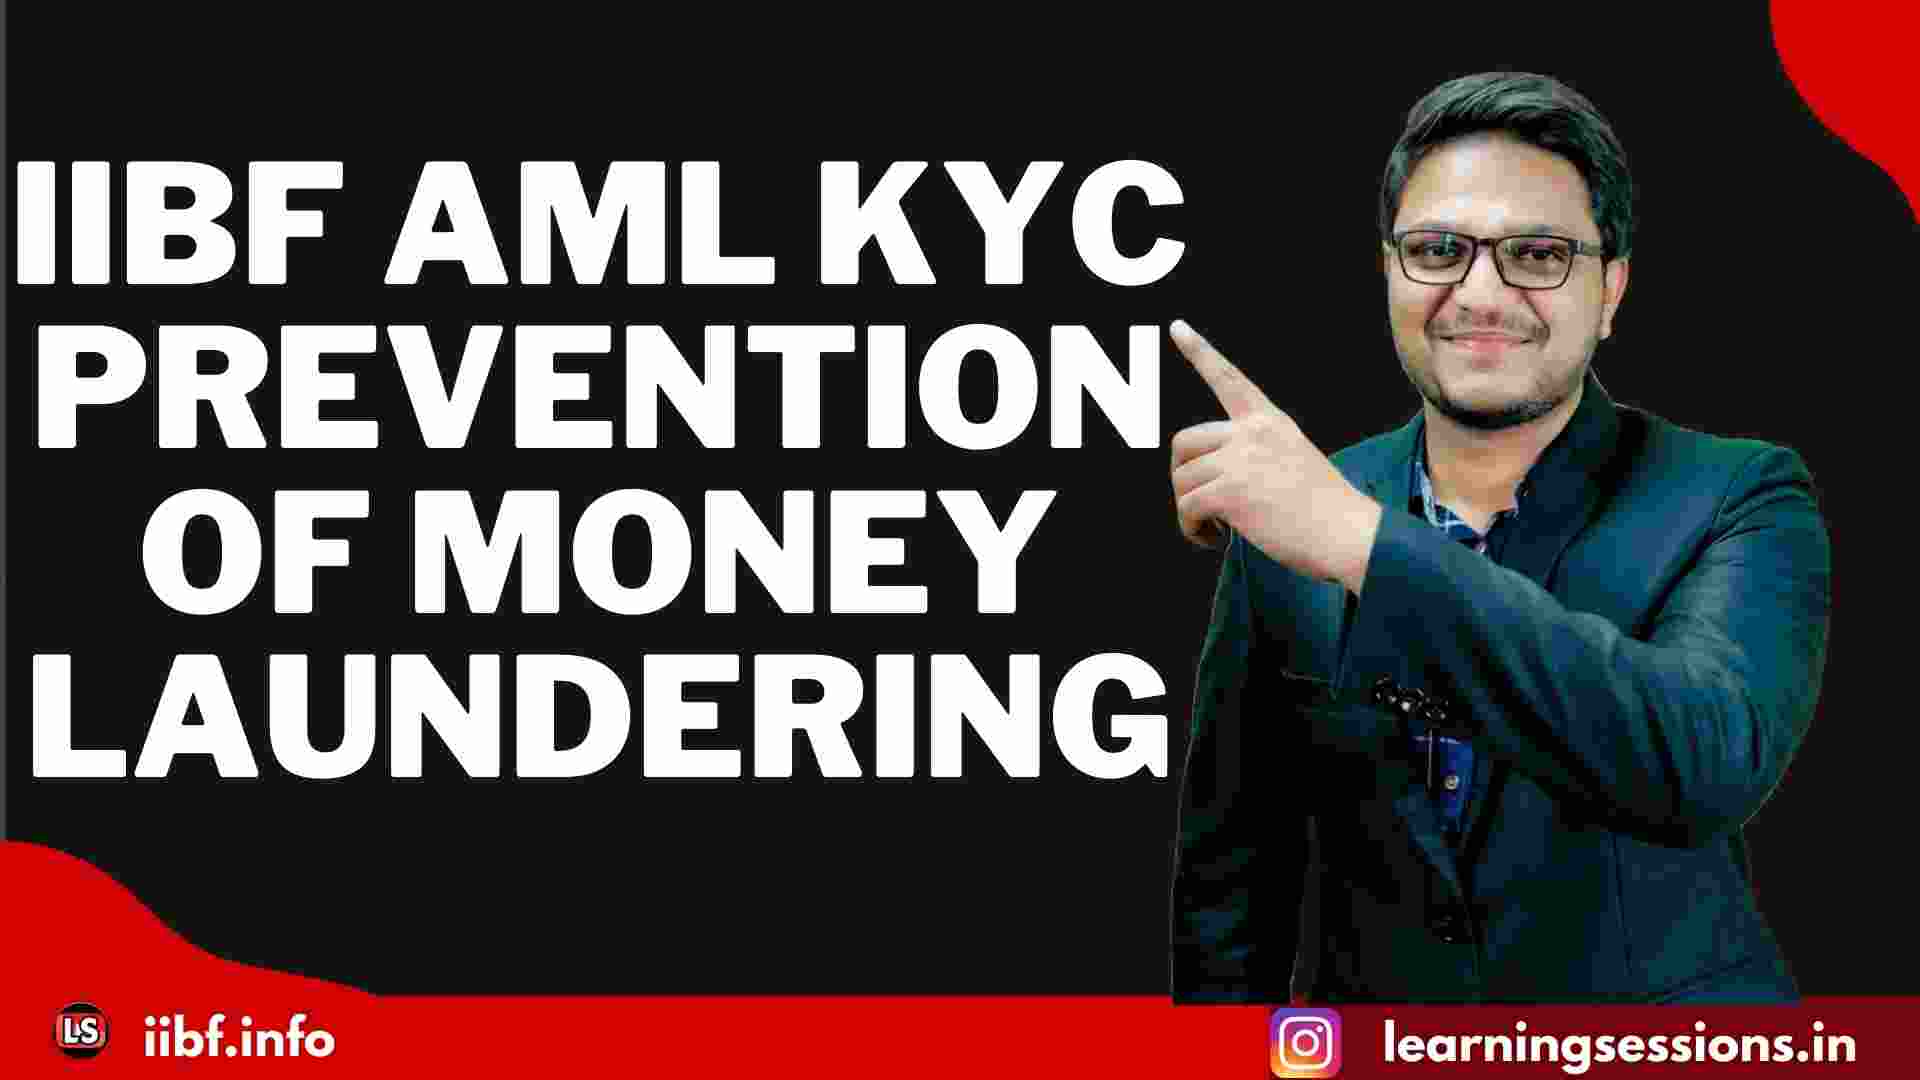 IIBF AML KYC PREVENTION OF MONEY LAUNDERING